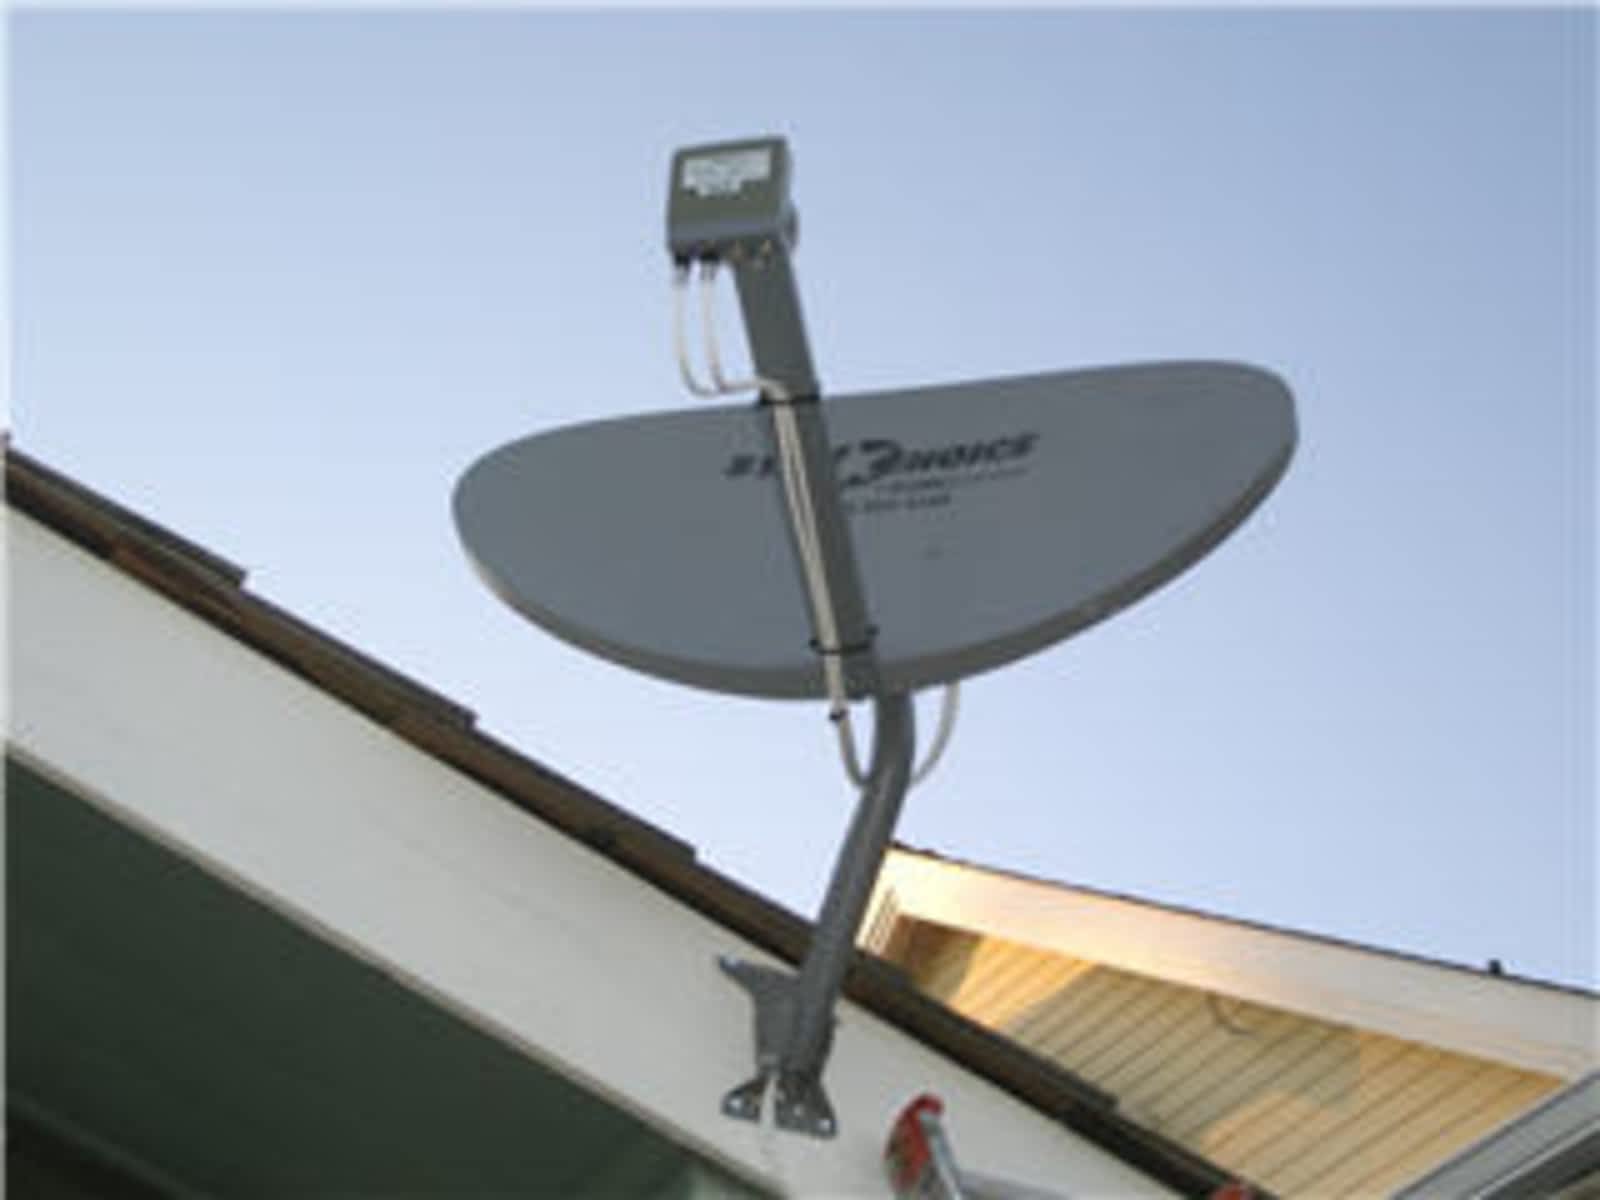 star choice satellite dish